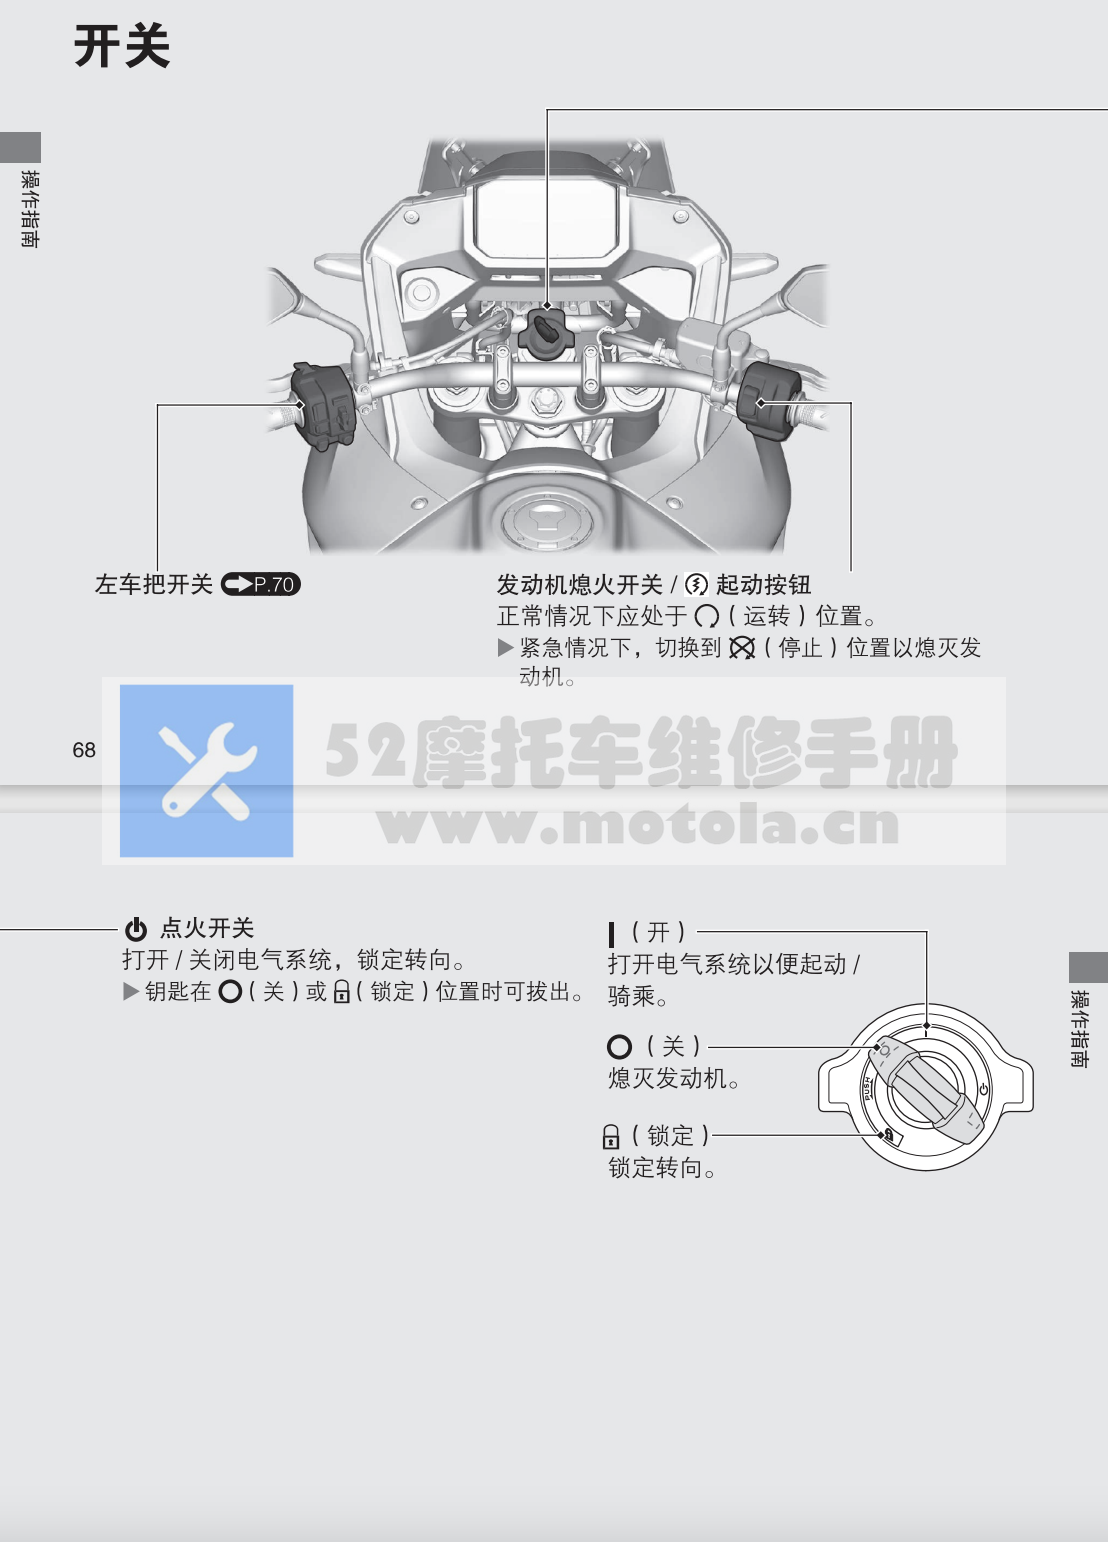 本田XL750用户手册插图4